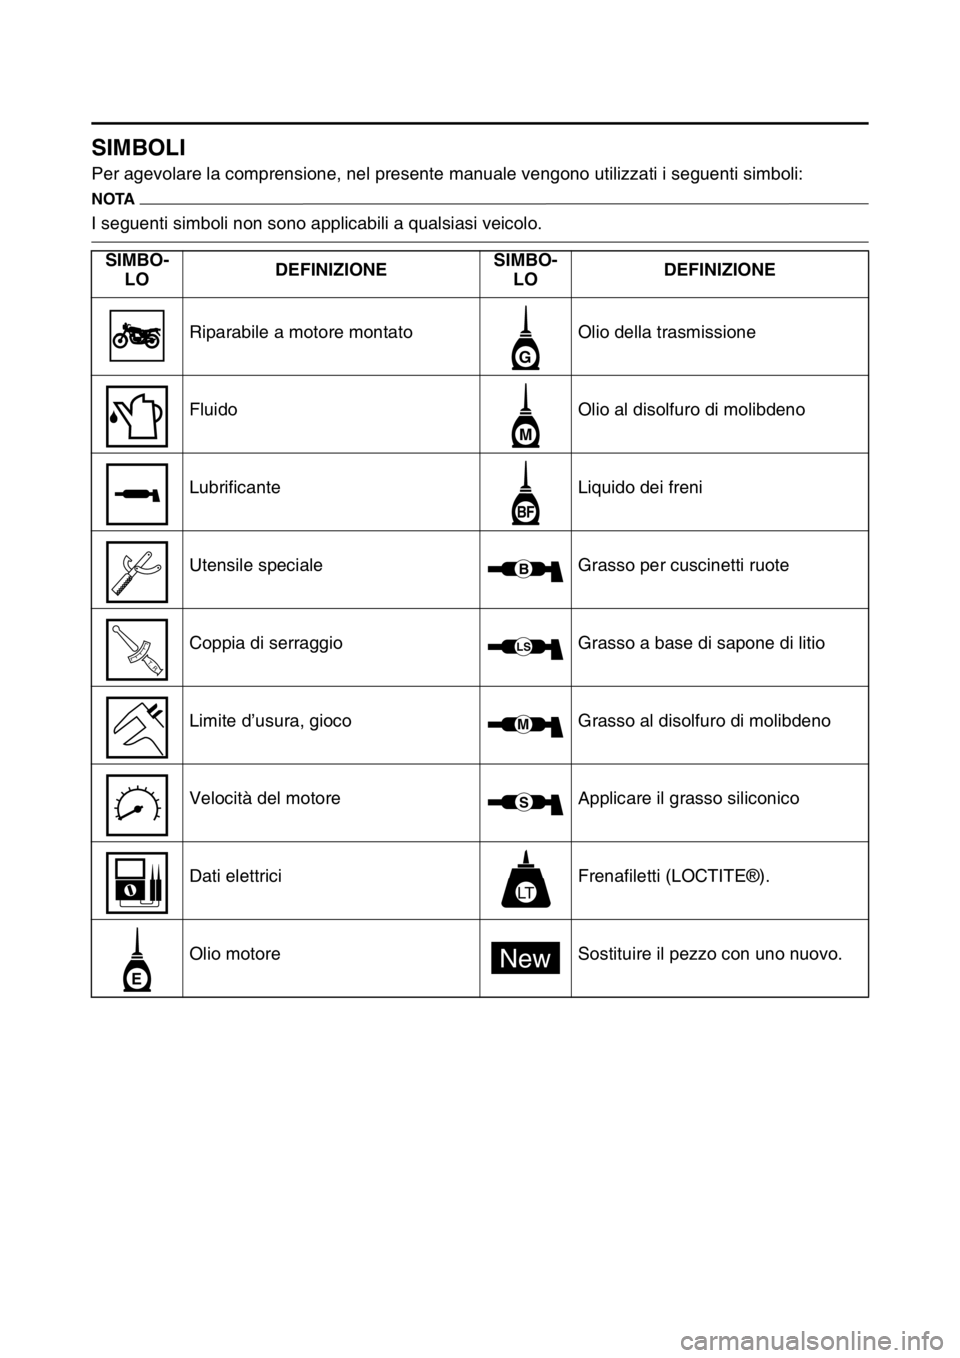 YAMAHA YZ250F 2014  Manuale duso (in Italian) HAS1SM1007
SIMBOLI
Per agevolare la comprensione, nel presente manuale vengono utilizzati i seguenti simboli:
NOTA
I seguenti simboli non sono applicabili a qualsiasi veicolo.
SIMBO-
LODEFINIZIONESIMB